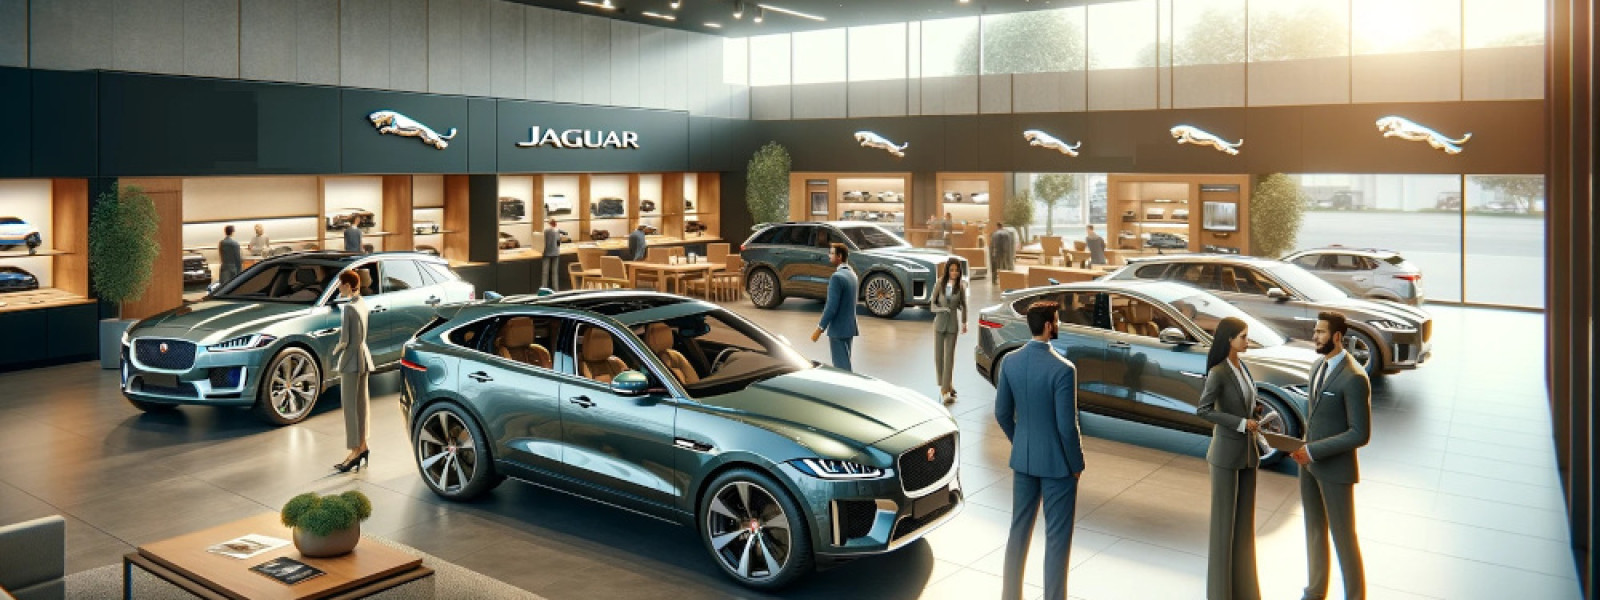 Jaguar SUV models